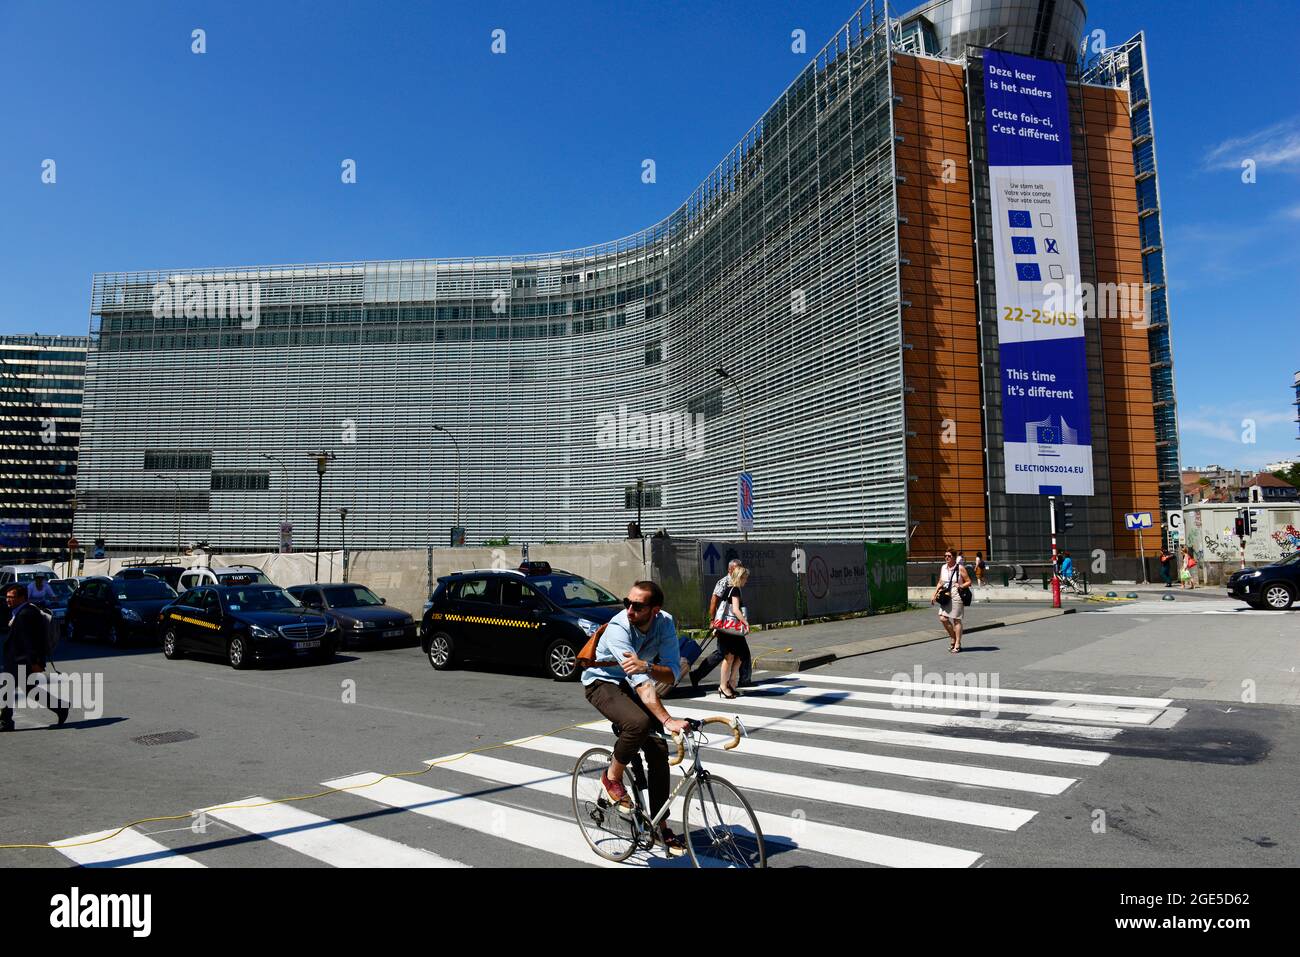 Das Berlaymont-Gebäude - Sitz der Europäischen Kommission, der Europäischen Kommission, der Exekutive der Europäischen Union, der EU. Brüssel, Belgien. Stockfoto